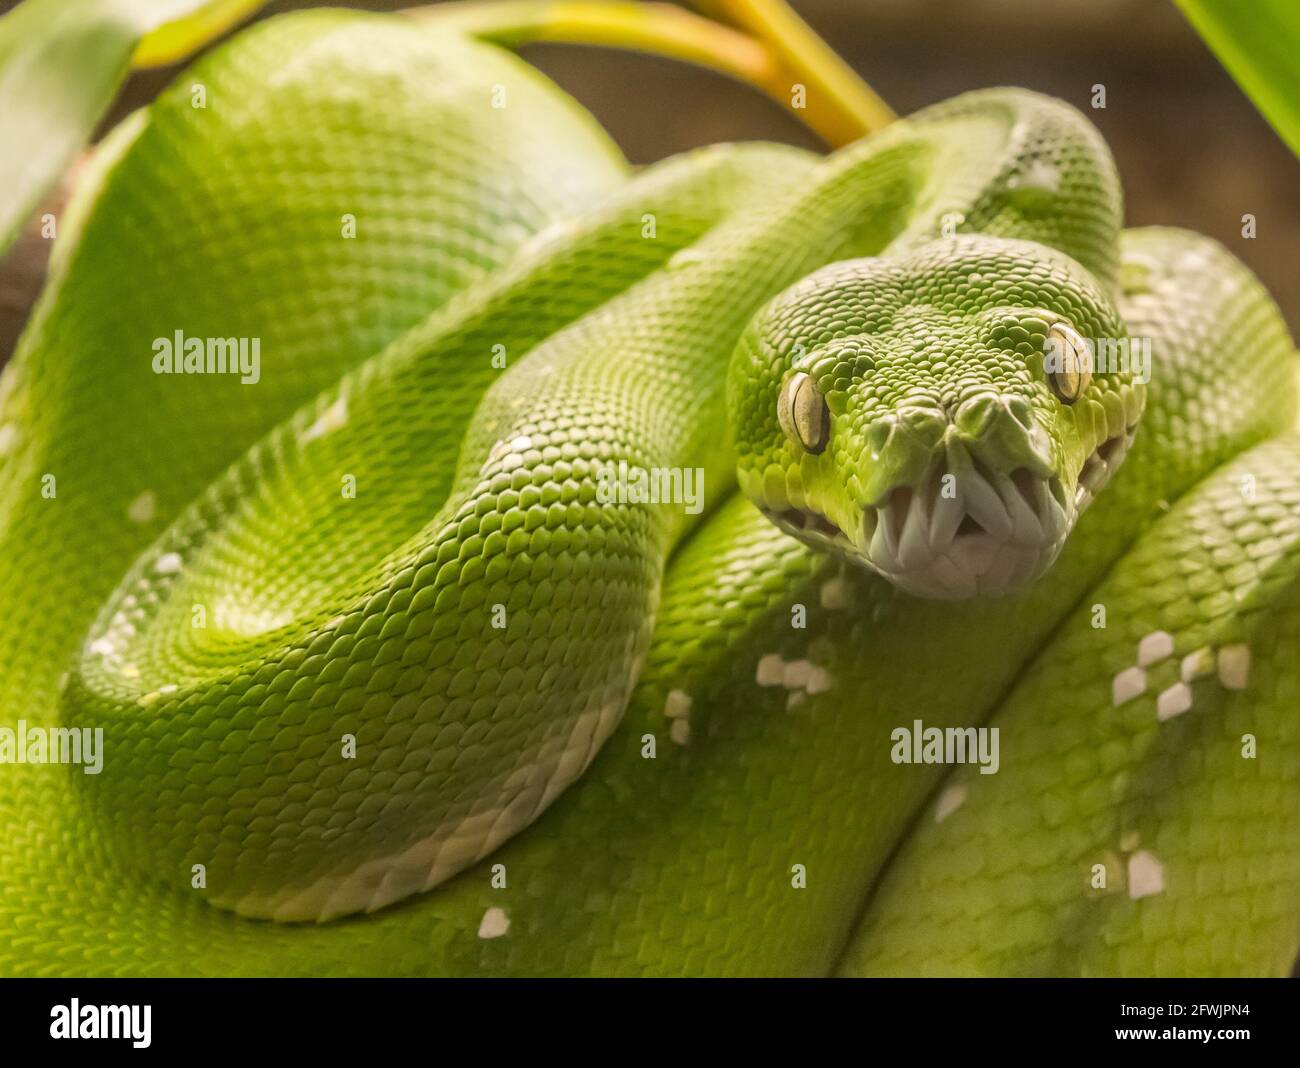 Grüne Baumpython (Morelia viridis) Schlange, heimisch in Neuguinea und  Indonesien Stockfotografie - Alamy